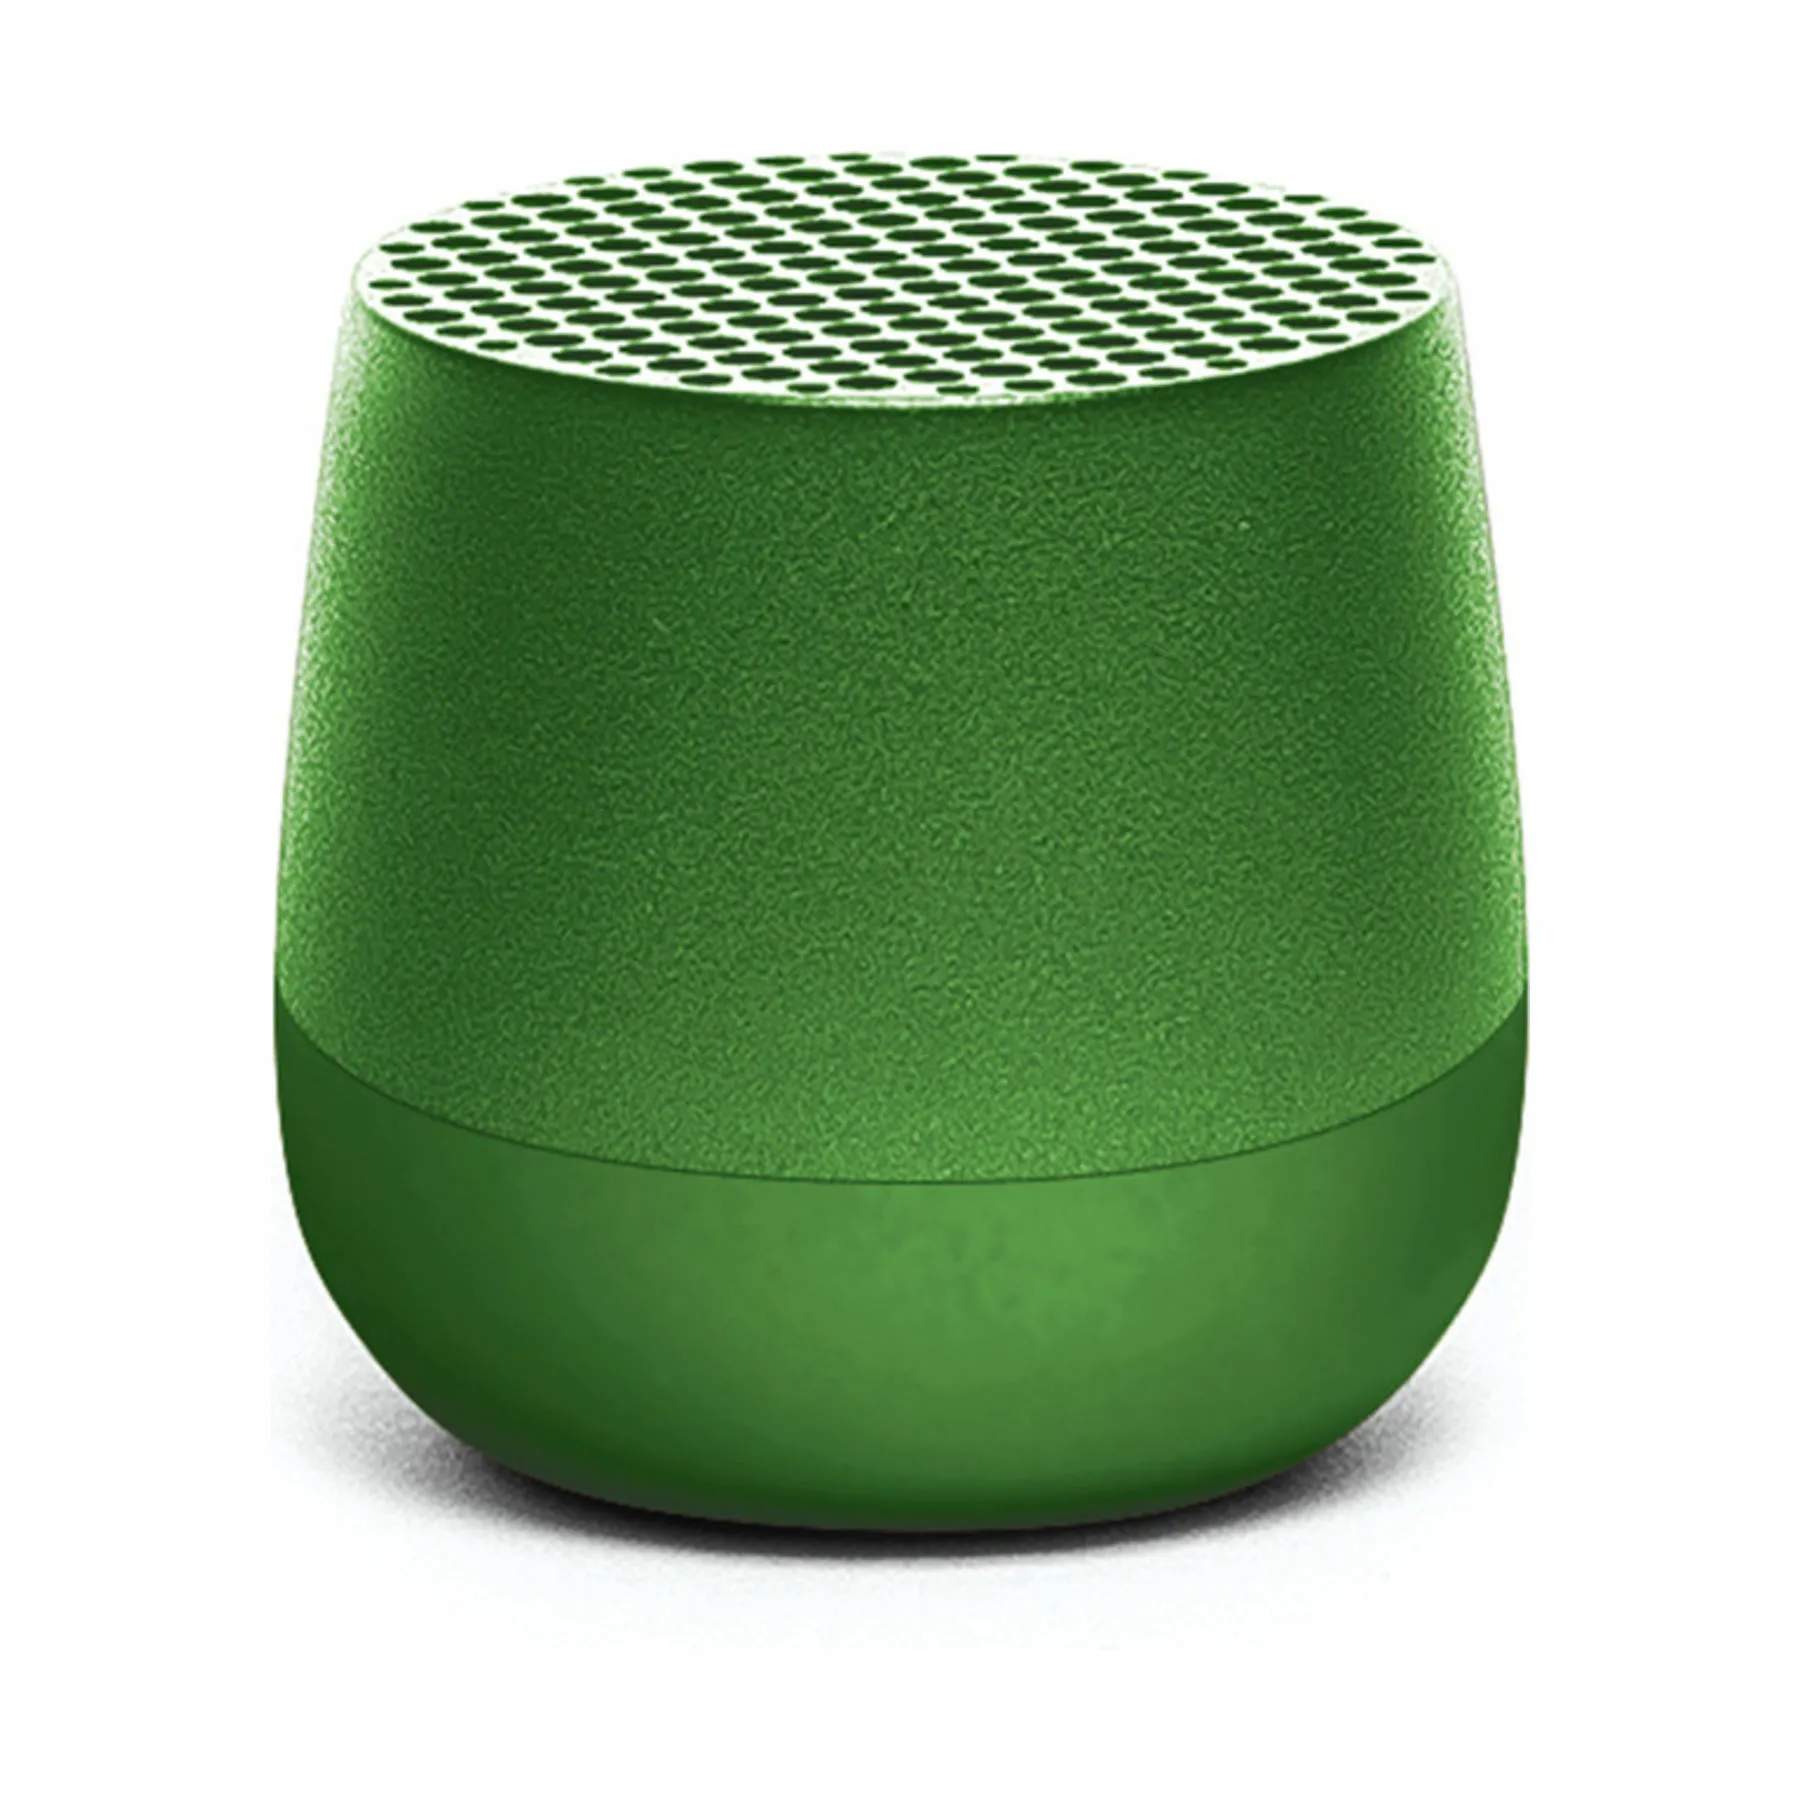 Mino Bluetooth Højtaler, grøn, large